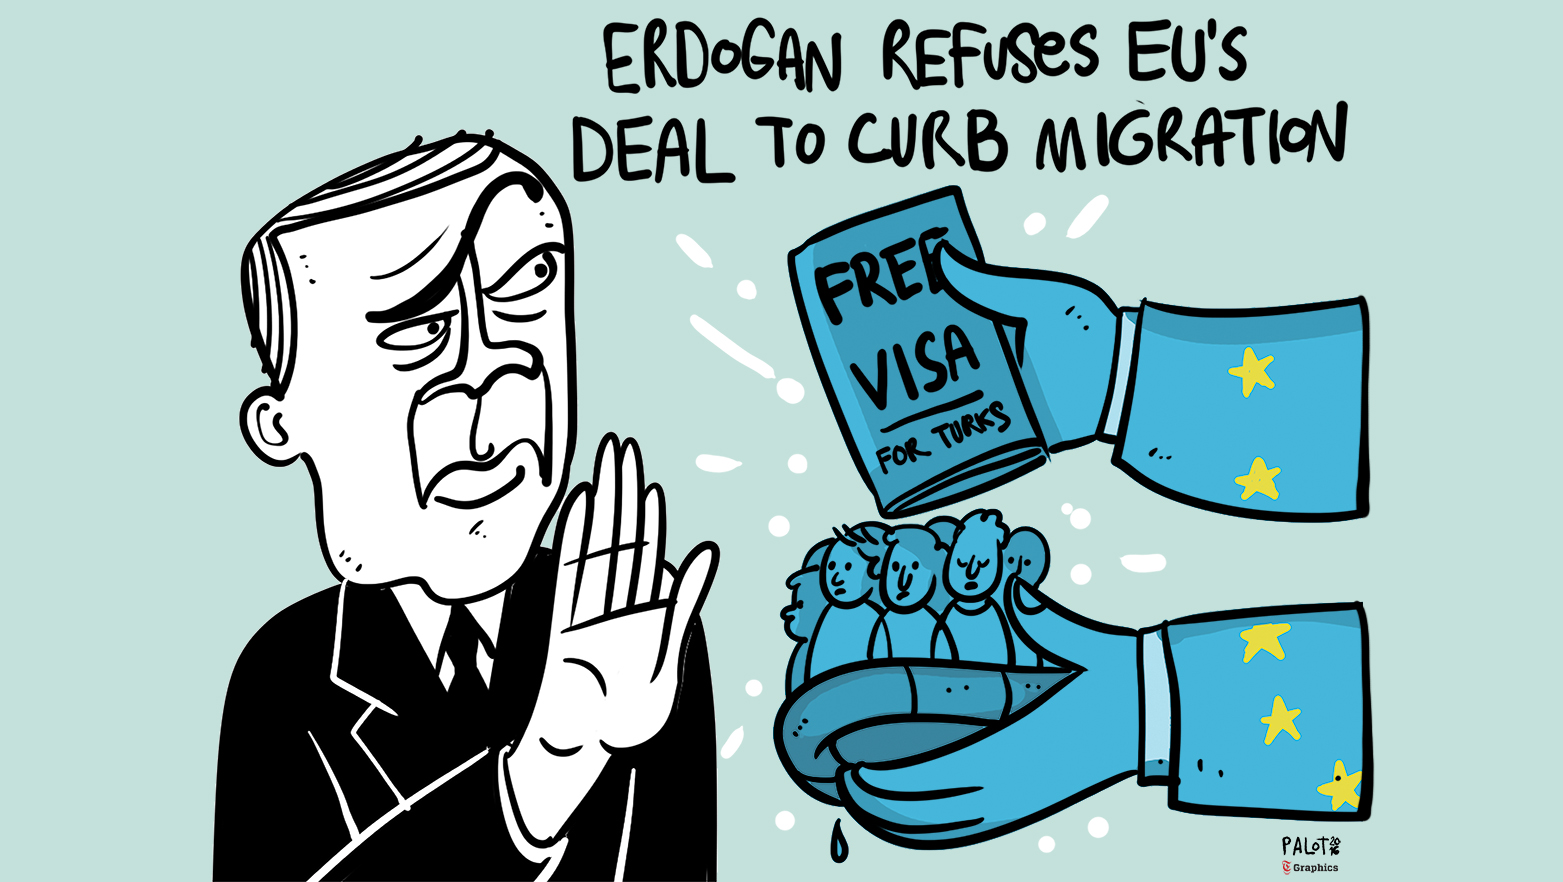 Erdogan refuses EU's deal to curb migration